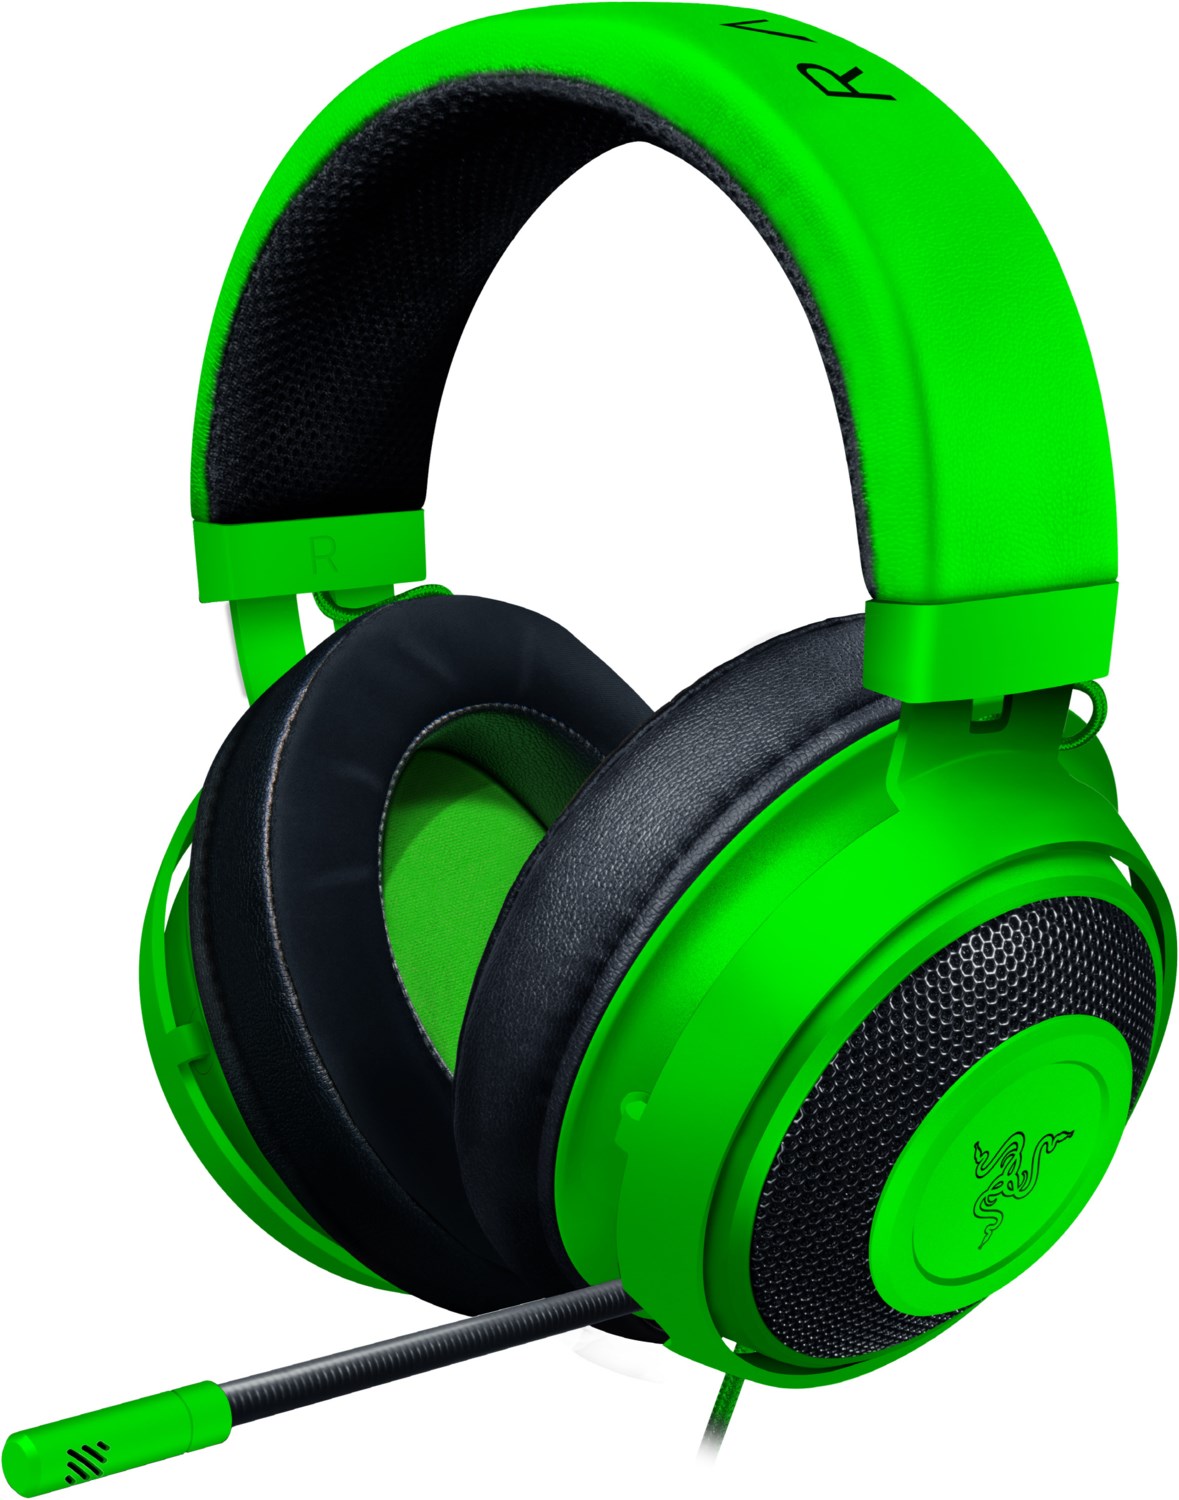 Kraken Gaming Headset grün